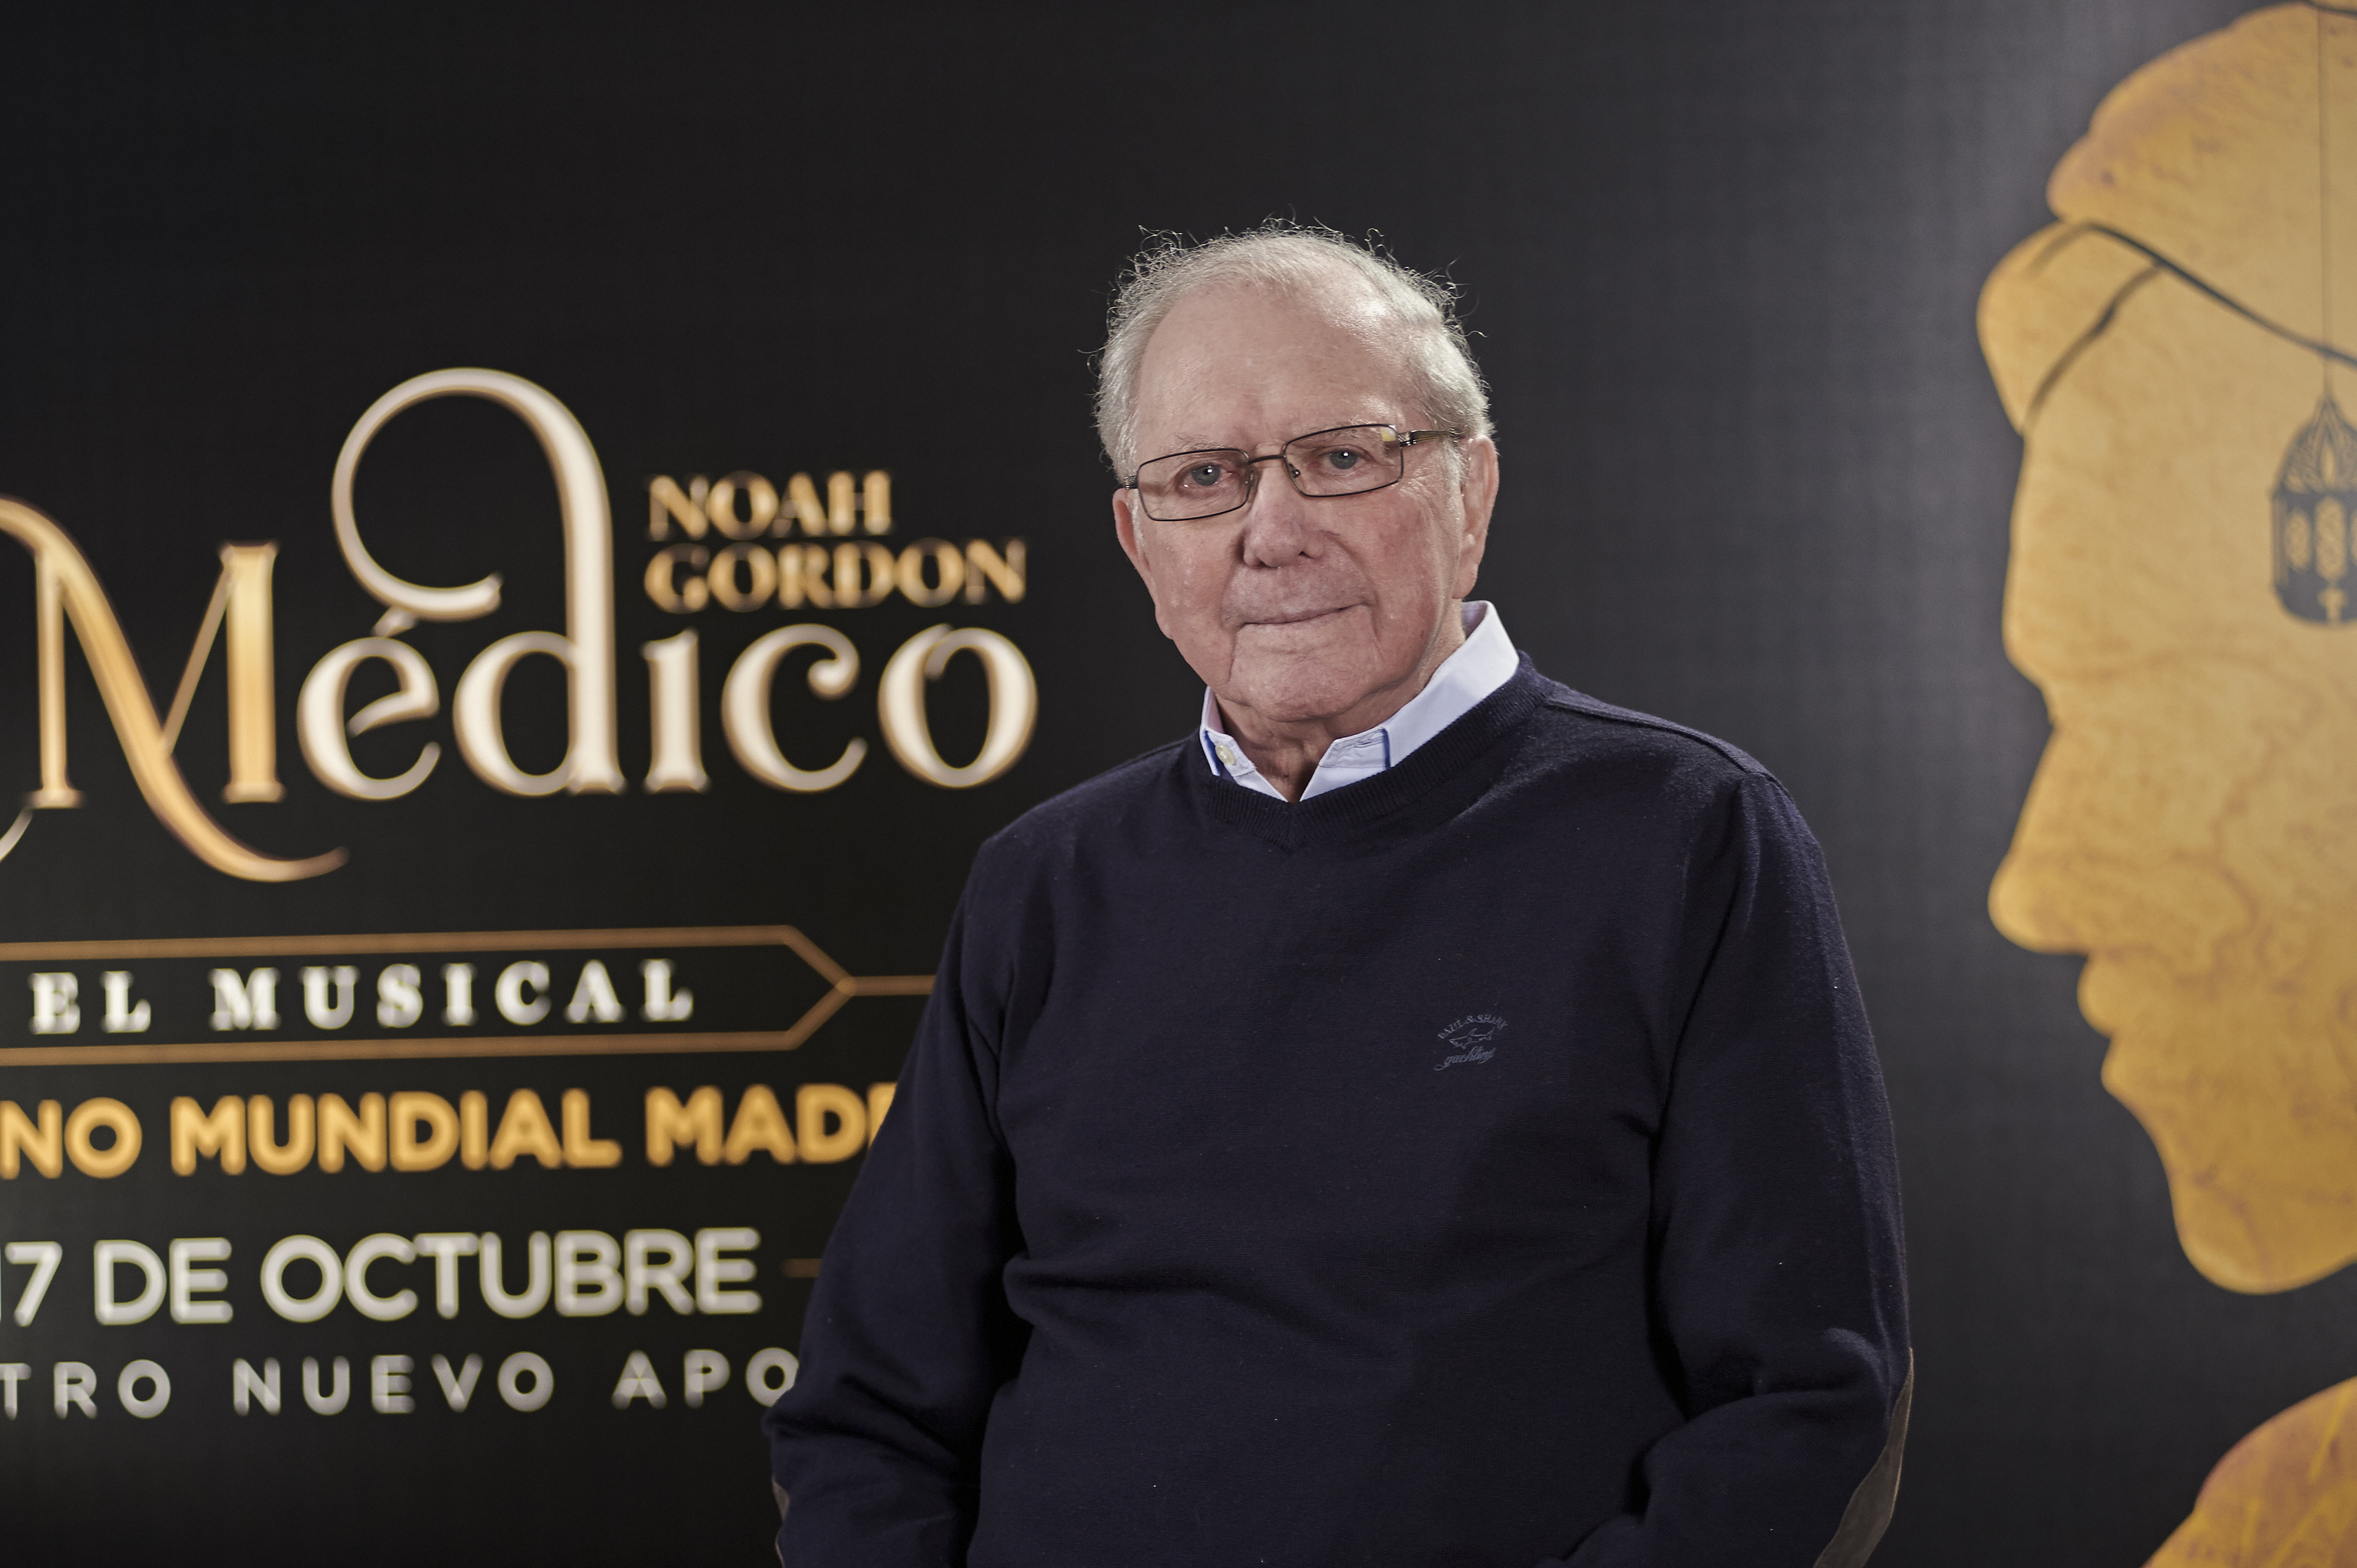 Noah Gordon durante el estreno del musical 'El mdico' en Madrid.